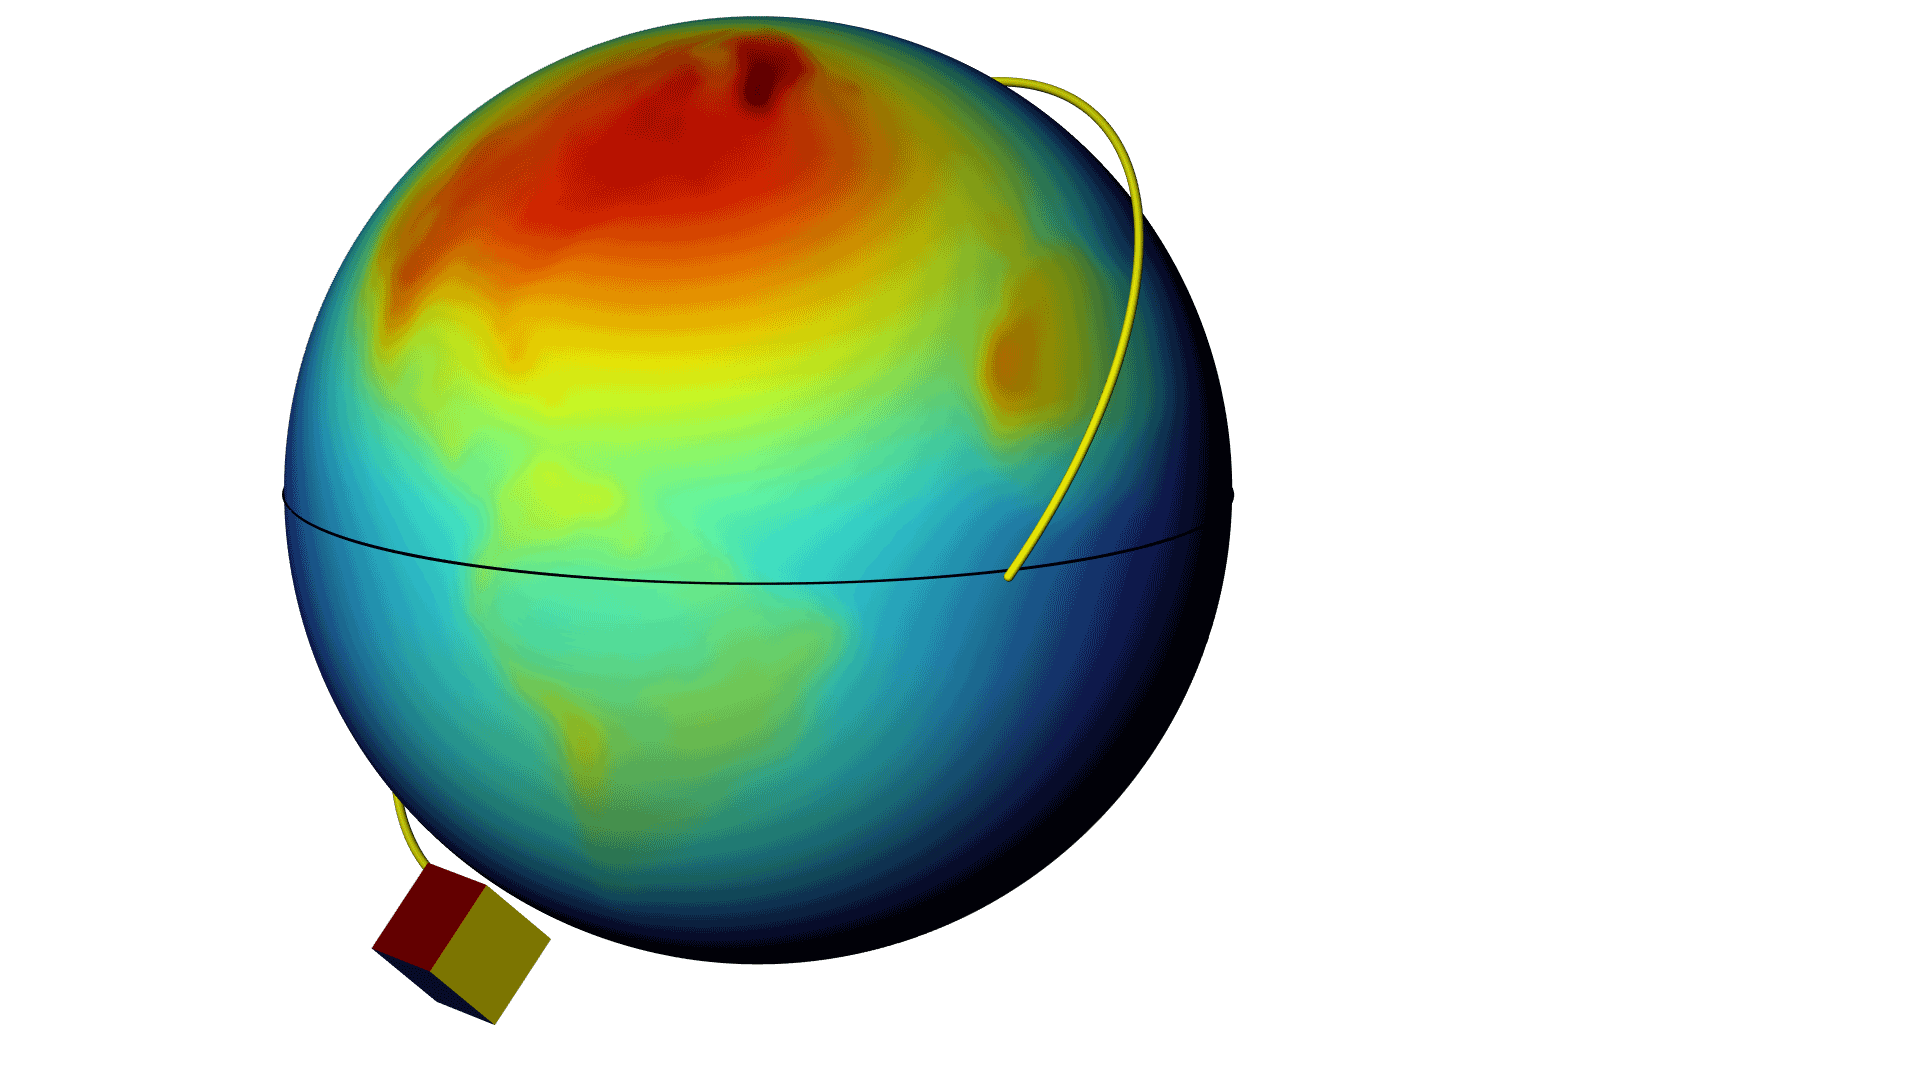 以 Rainbow 颜色表显示的卫星绕地球的运行轨道模型。